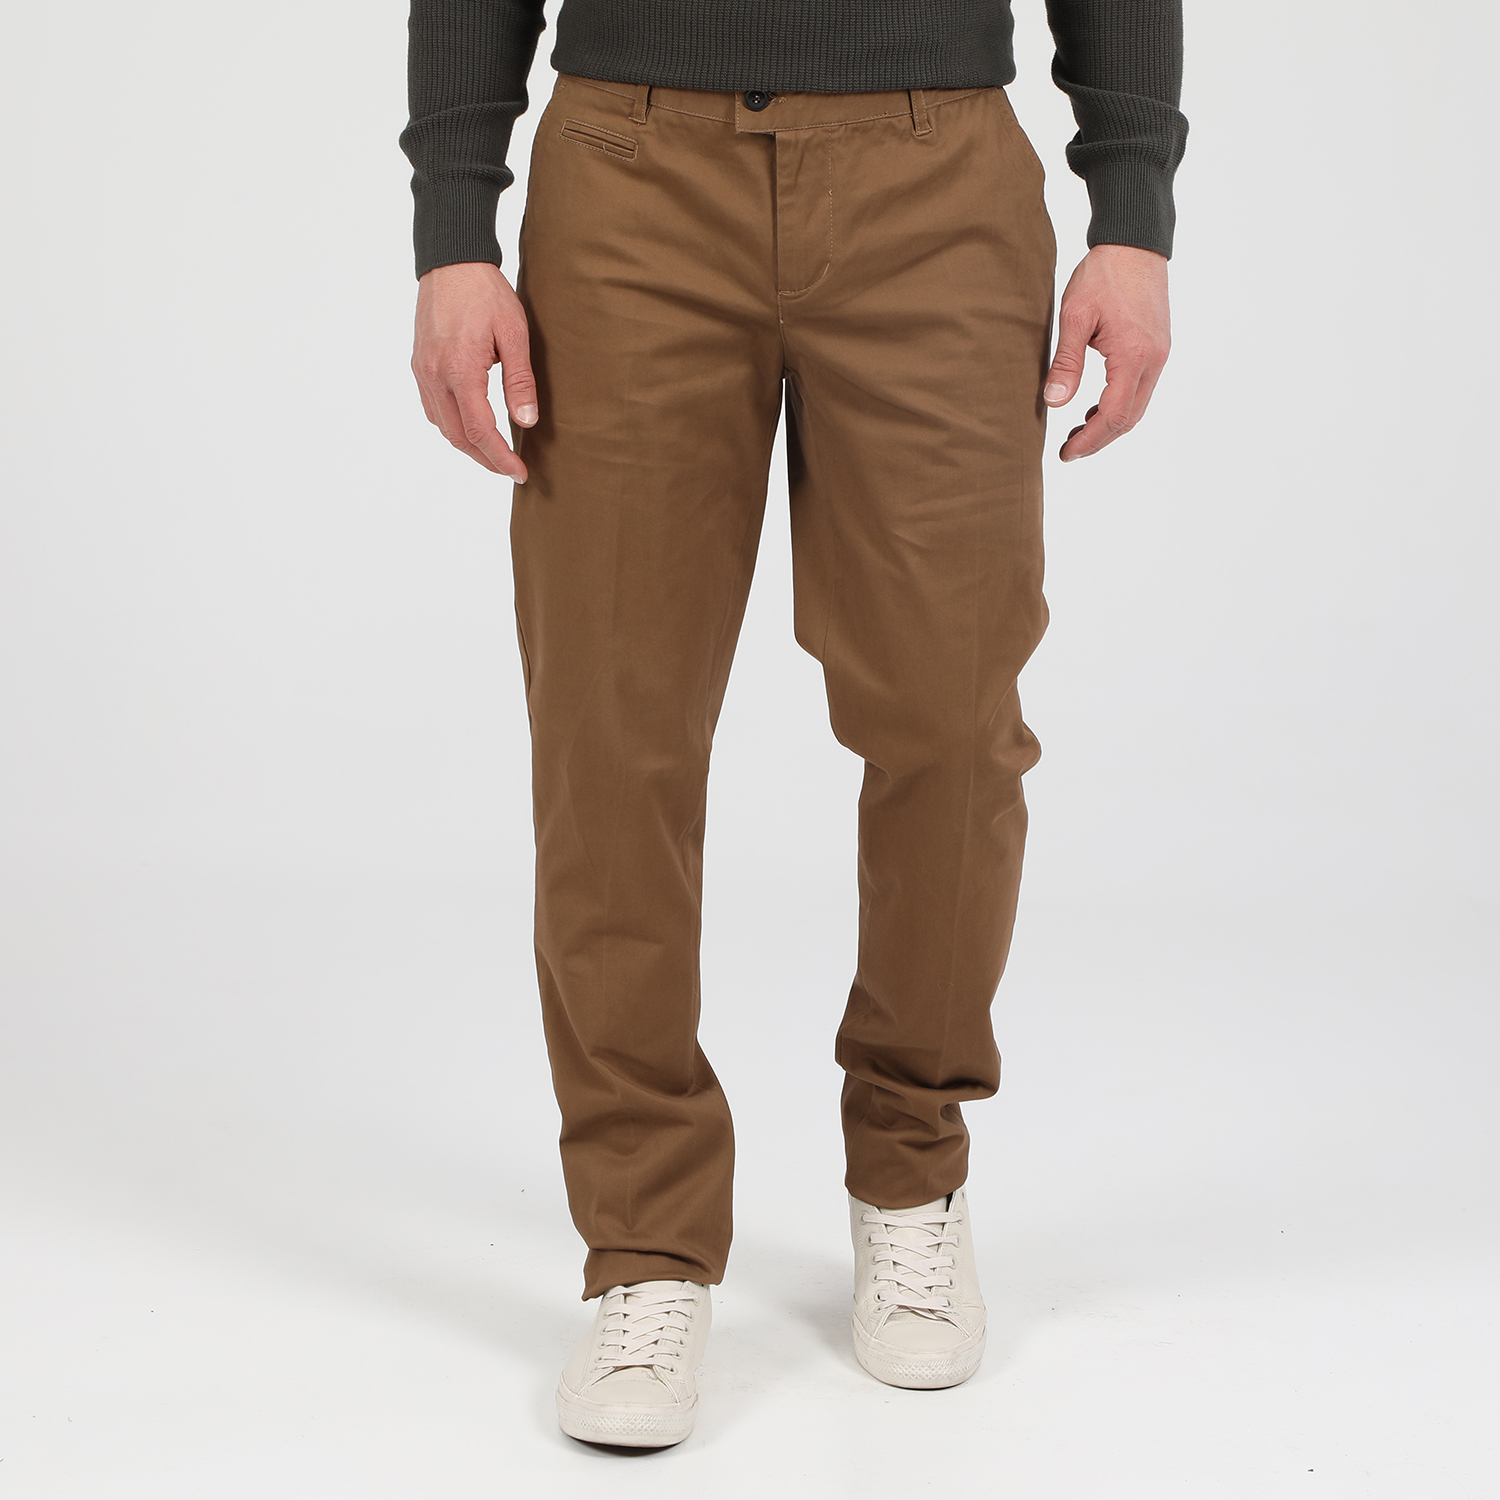 Ανδρικά/Ρούχα/Παντελόνια/Chinos MARTIN & CO - Ανδρικό παντελόνι MARTIN & CO SLIM CHINOS καφέ